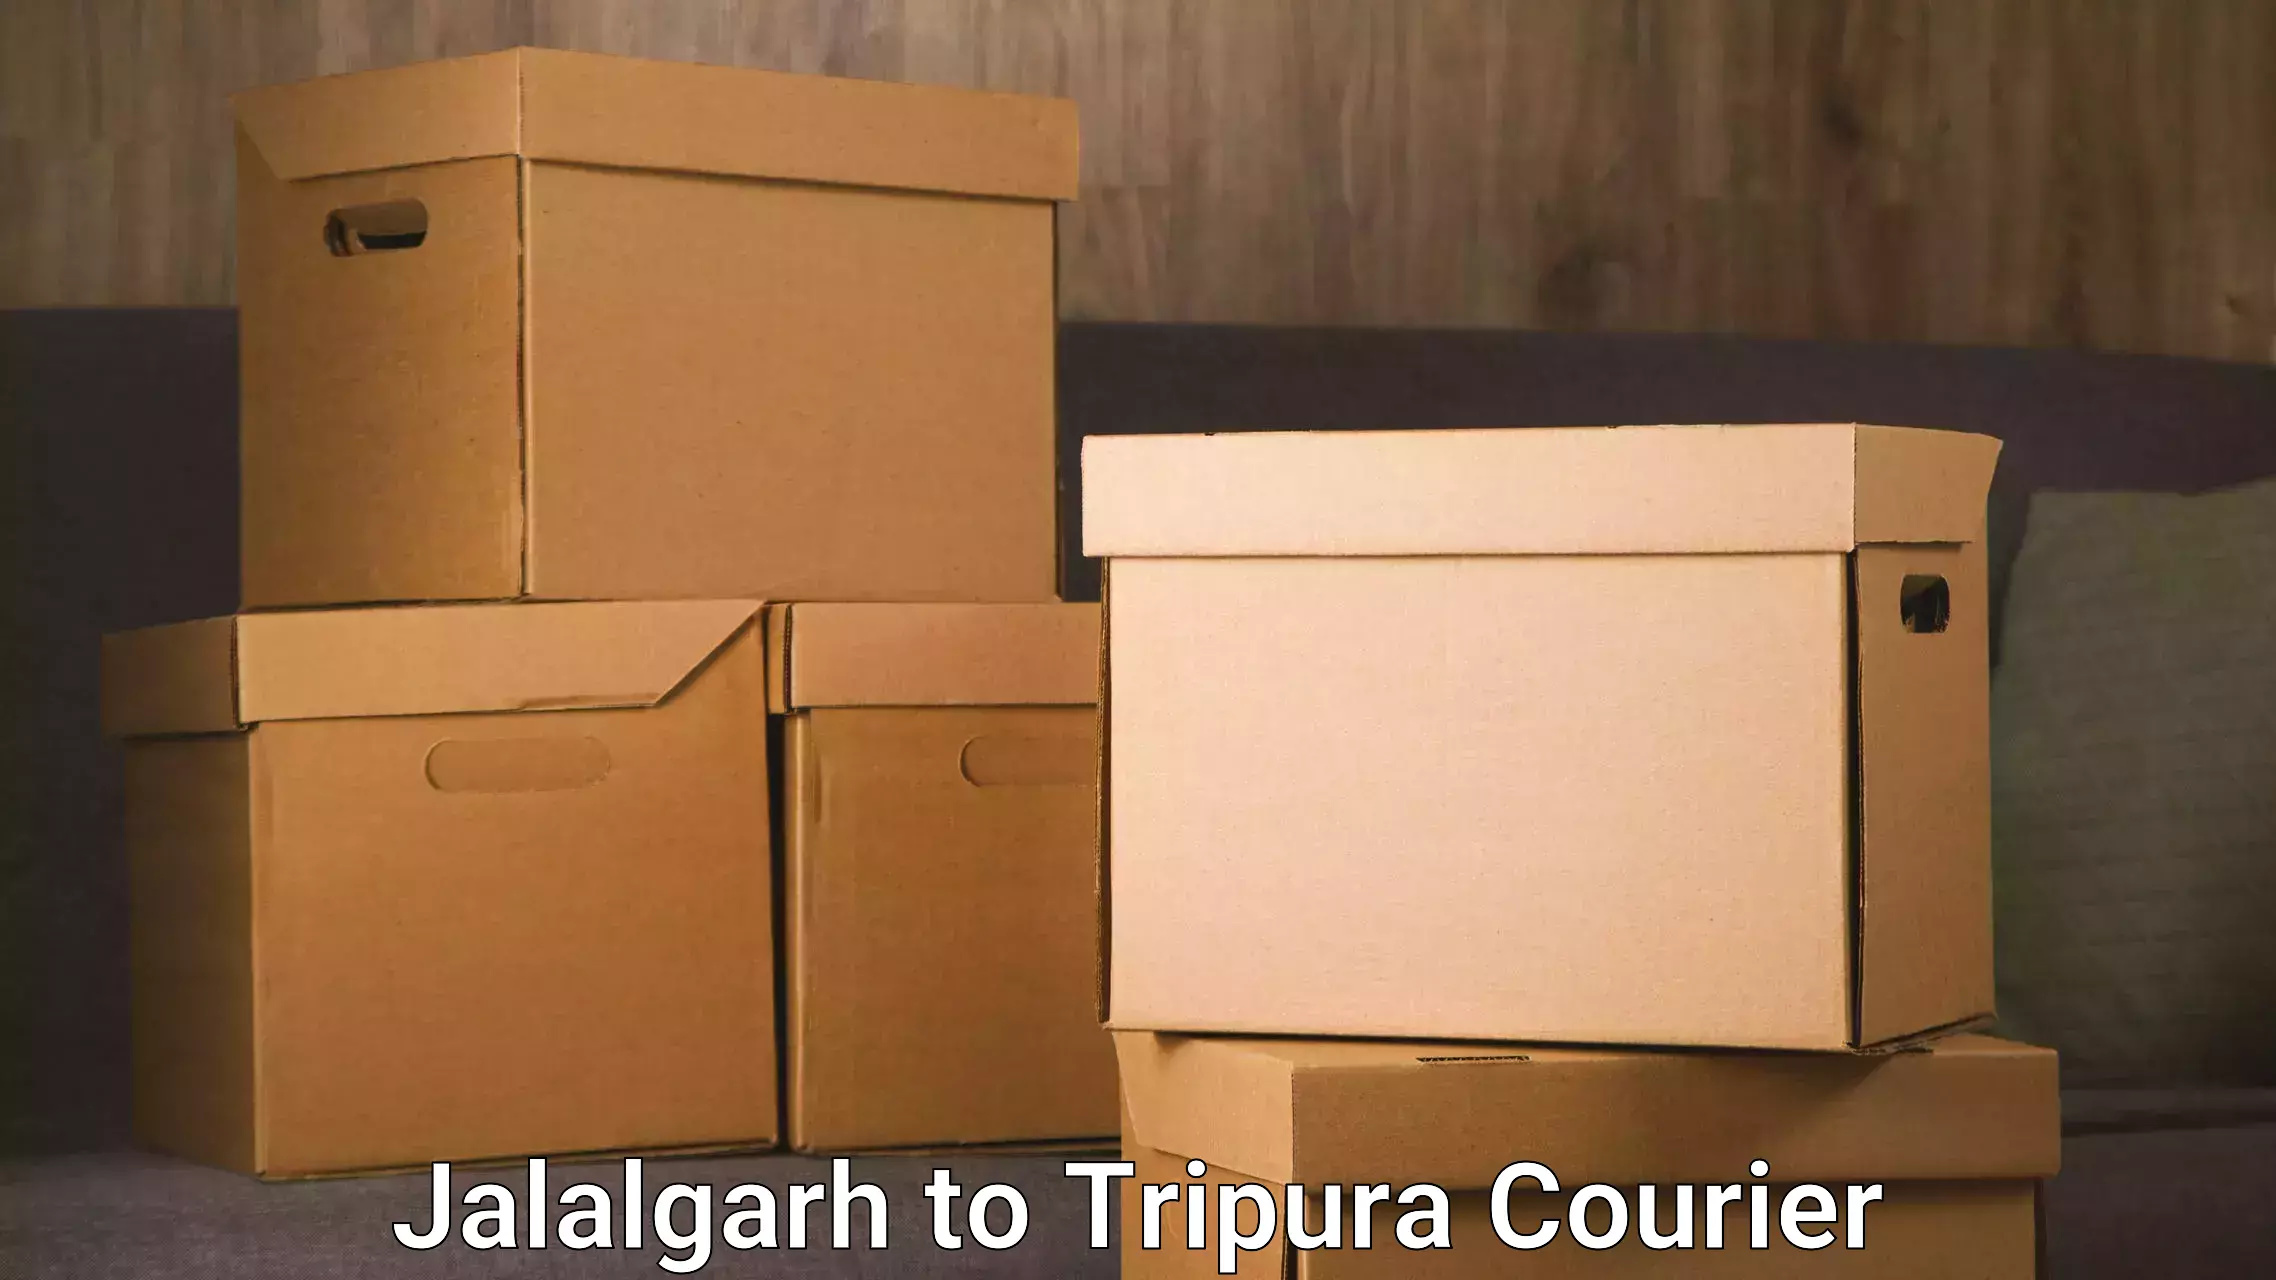 Efficient furniture relocation Jalalgarh to Udaipur Tripura